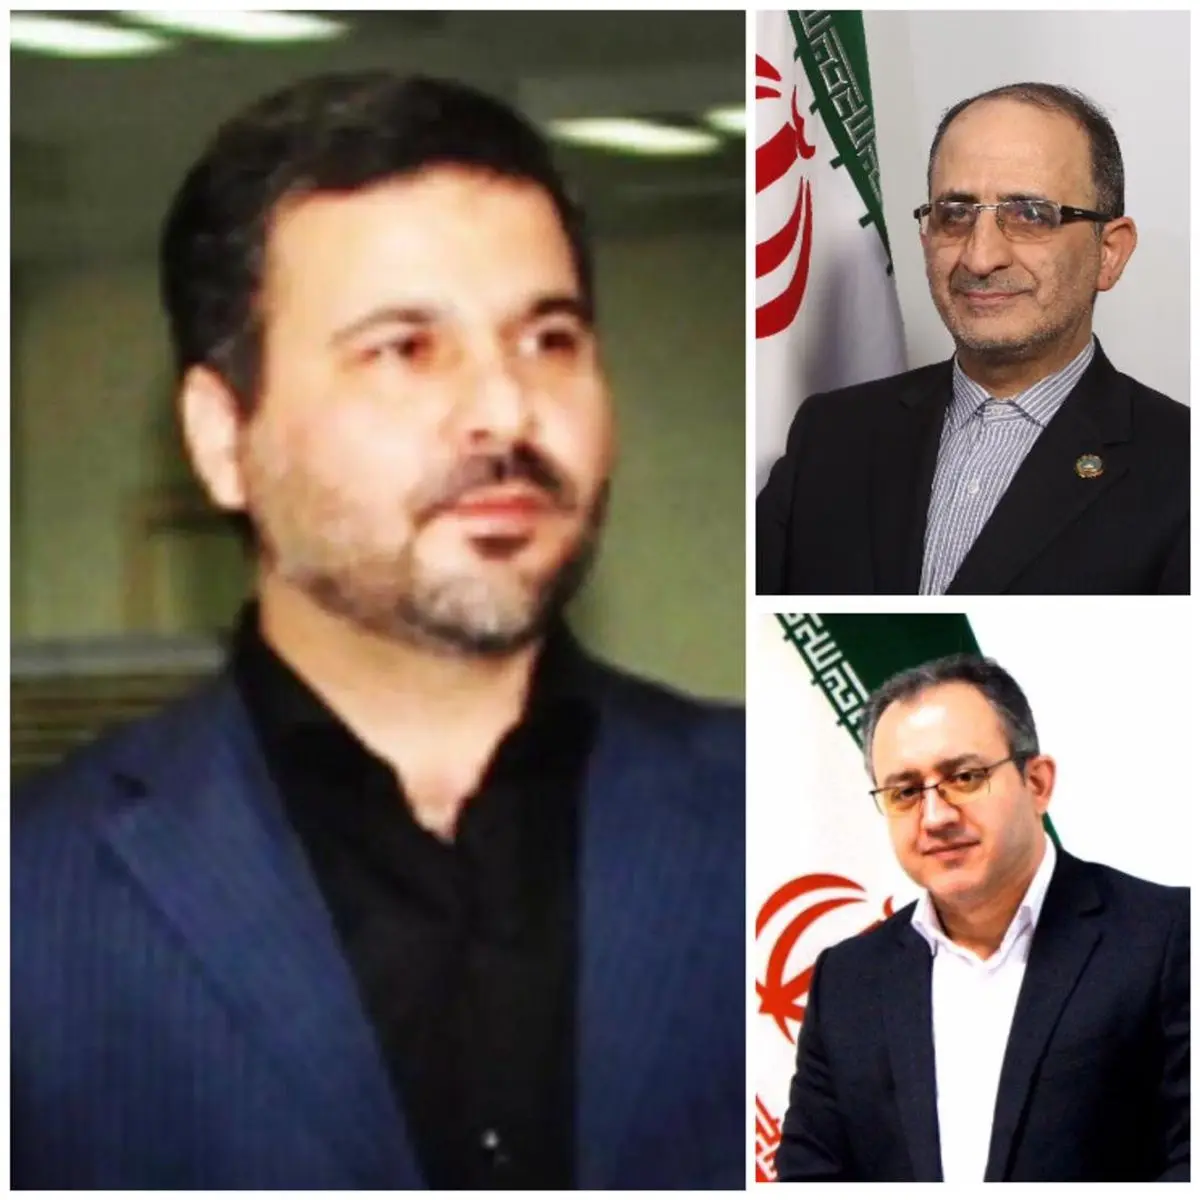 با حکم وزیر اقتصاد حسن شریفی مدیر عامل بیمه ایران شد